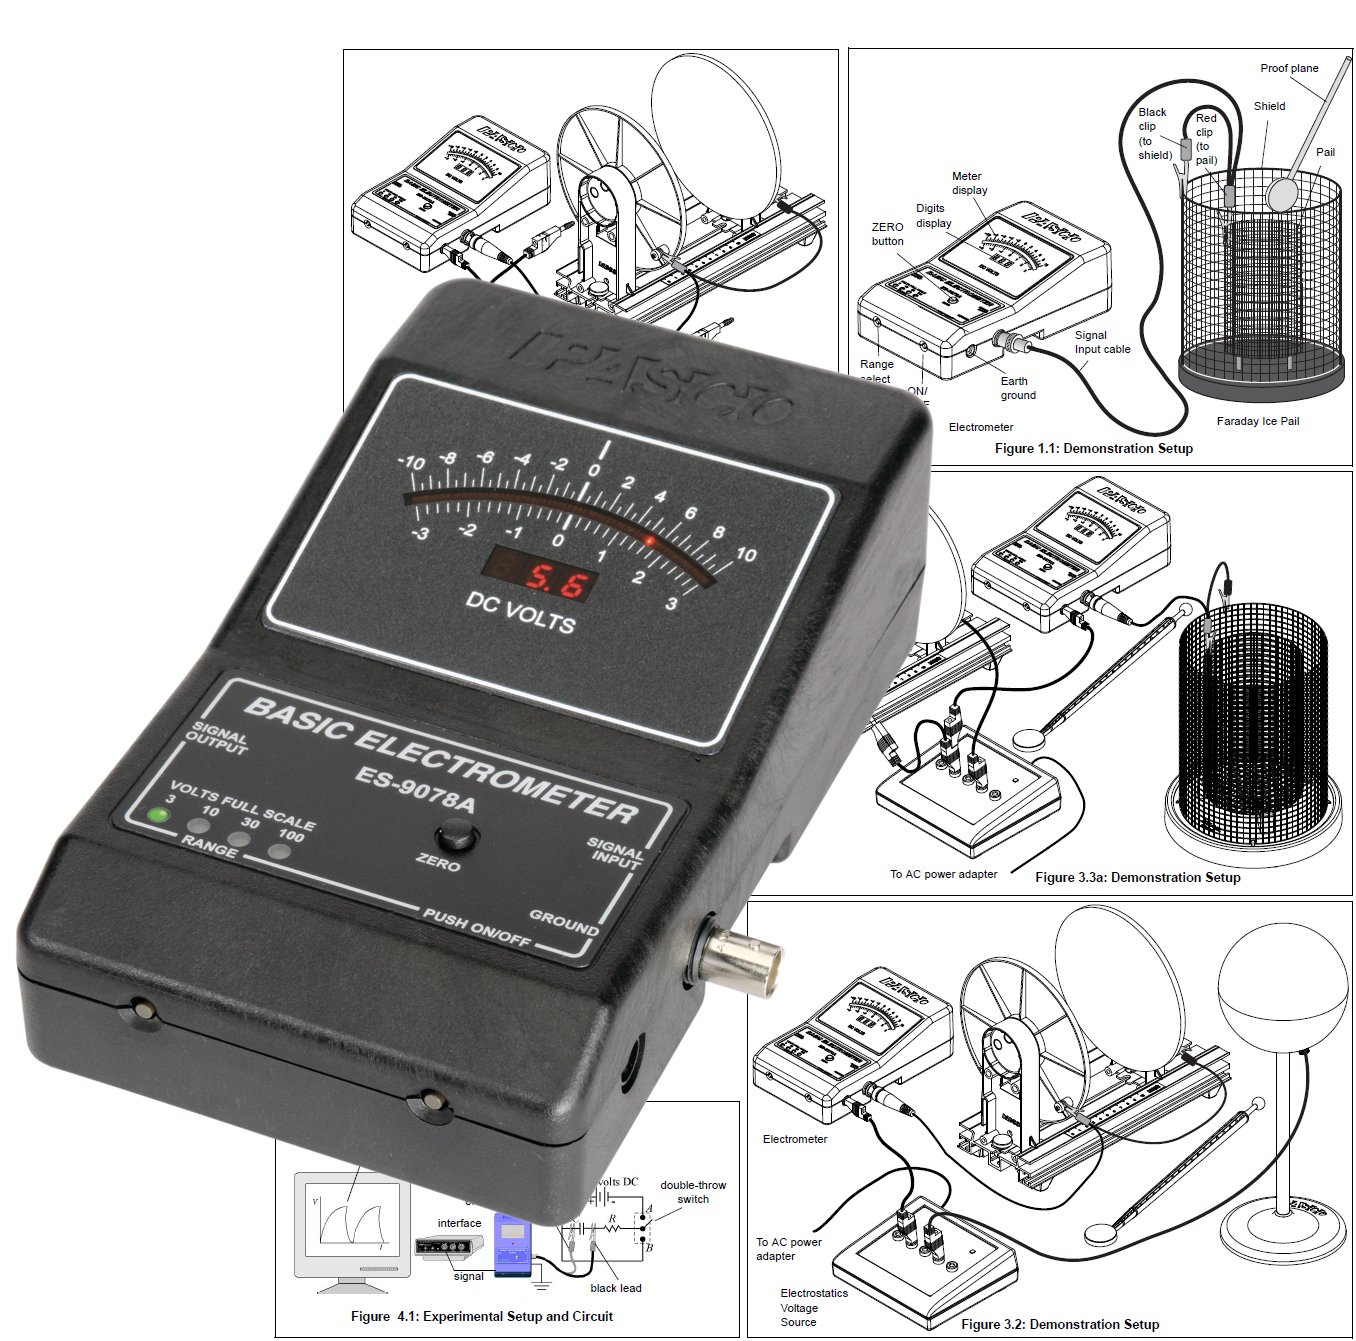 Electrómetro (Voltímetro de impedancia extremadamente alta) ES-9078A